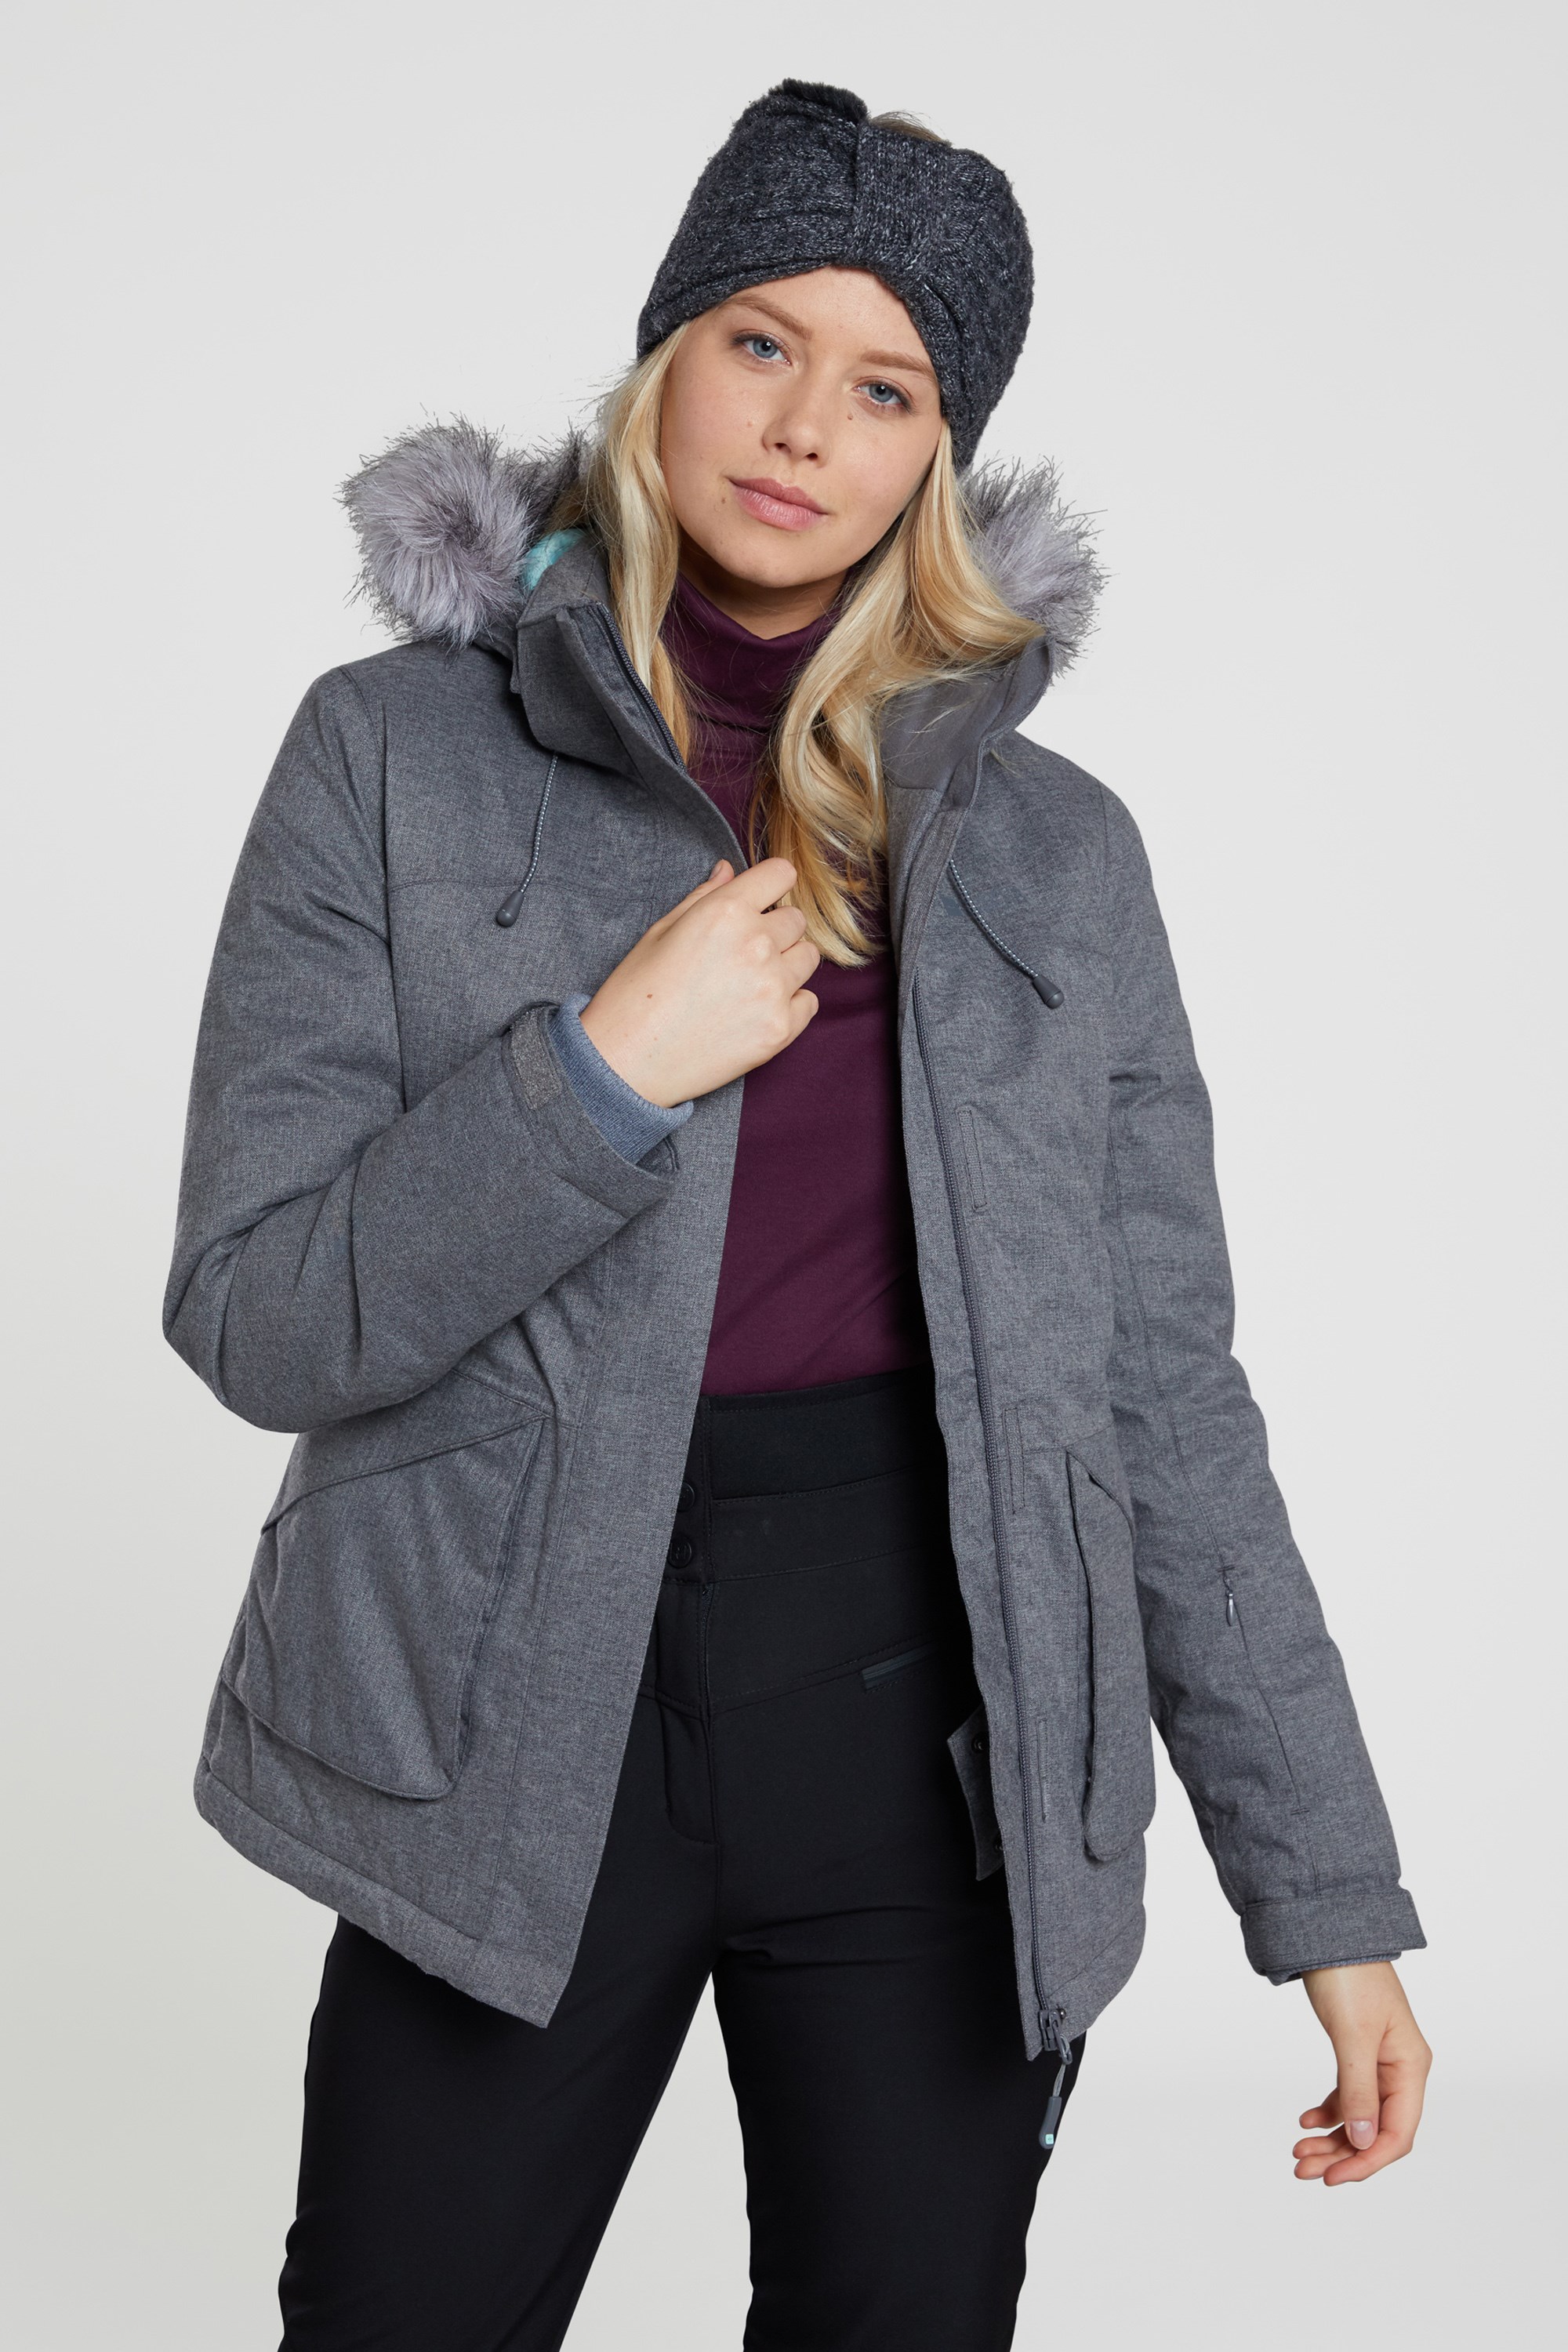 Mountain Warehouse Wms Snow Womens Textured Ski Jacket 